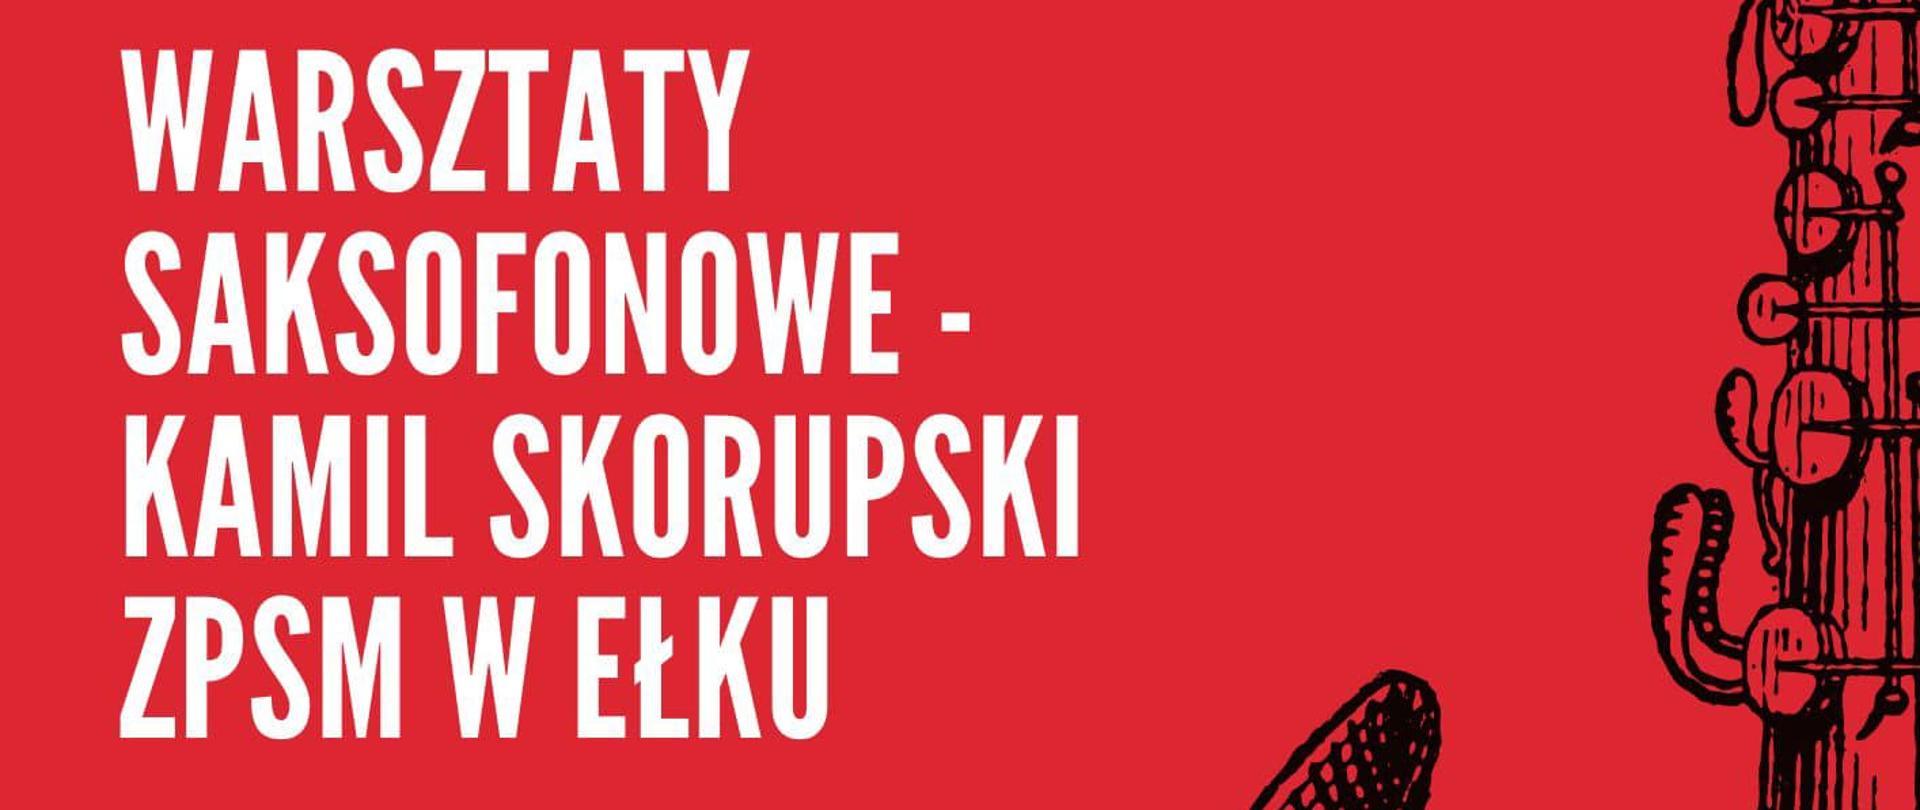 Plakat na czerwonym tle reklamujący warsztaty saksofonowe z Kamil Skorupskim 13 grudnia 2023. Białą czcionką informacje. Po prawej stronie rysunek saksofonu w czarnym kolorze.